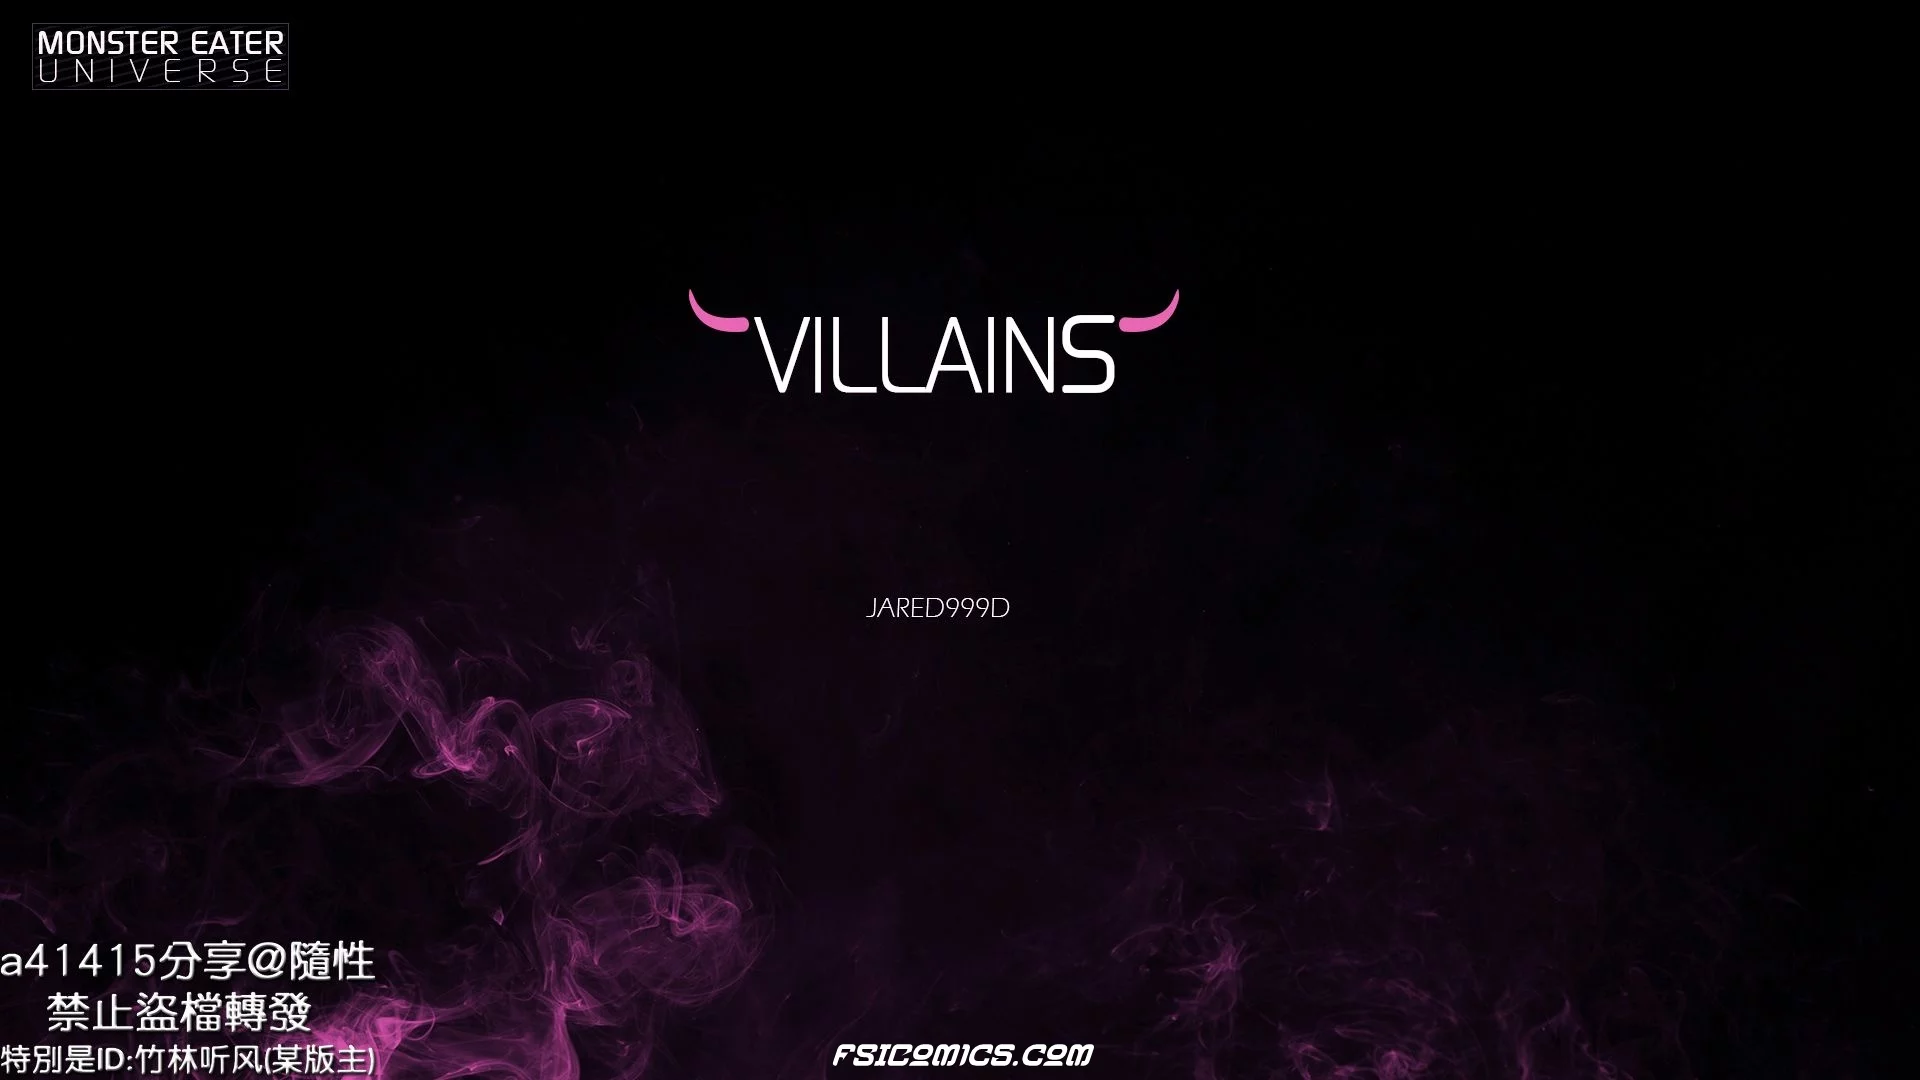 Villains Chapter 1 -Jared999D - 43 - FSIComics